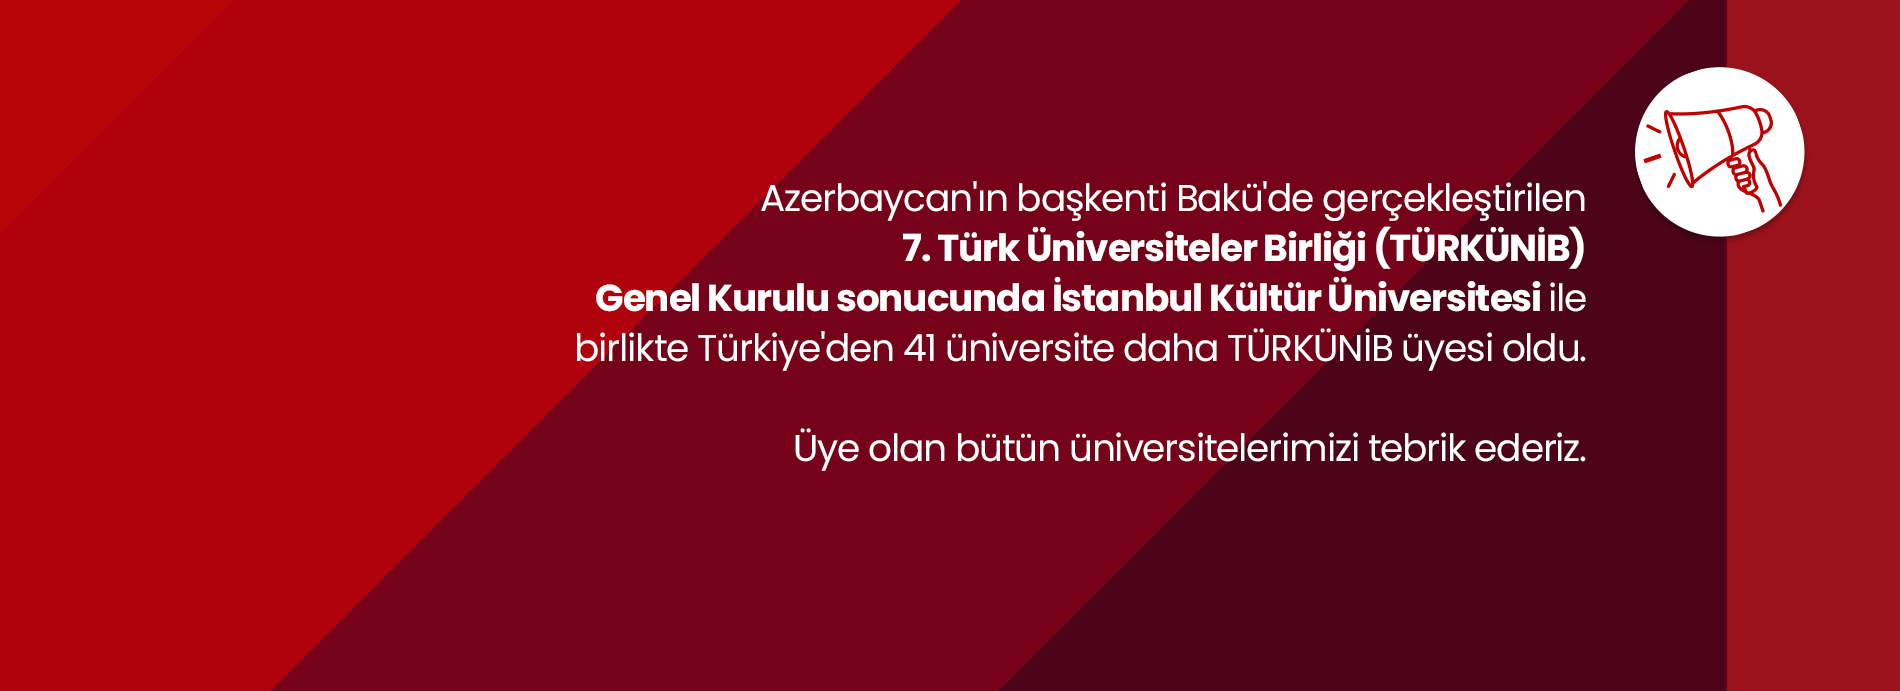 İstanbul Kültür Üniversitesi (İKÜ), Türk Üniversiteler Birliği'ne (TÜRKÜNİB) Üye Oldu